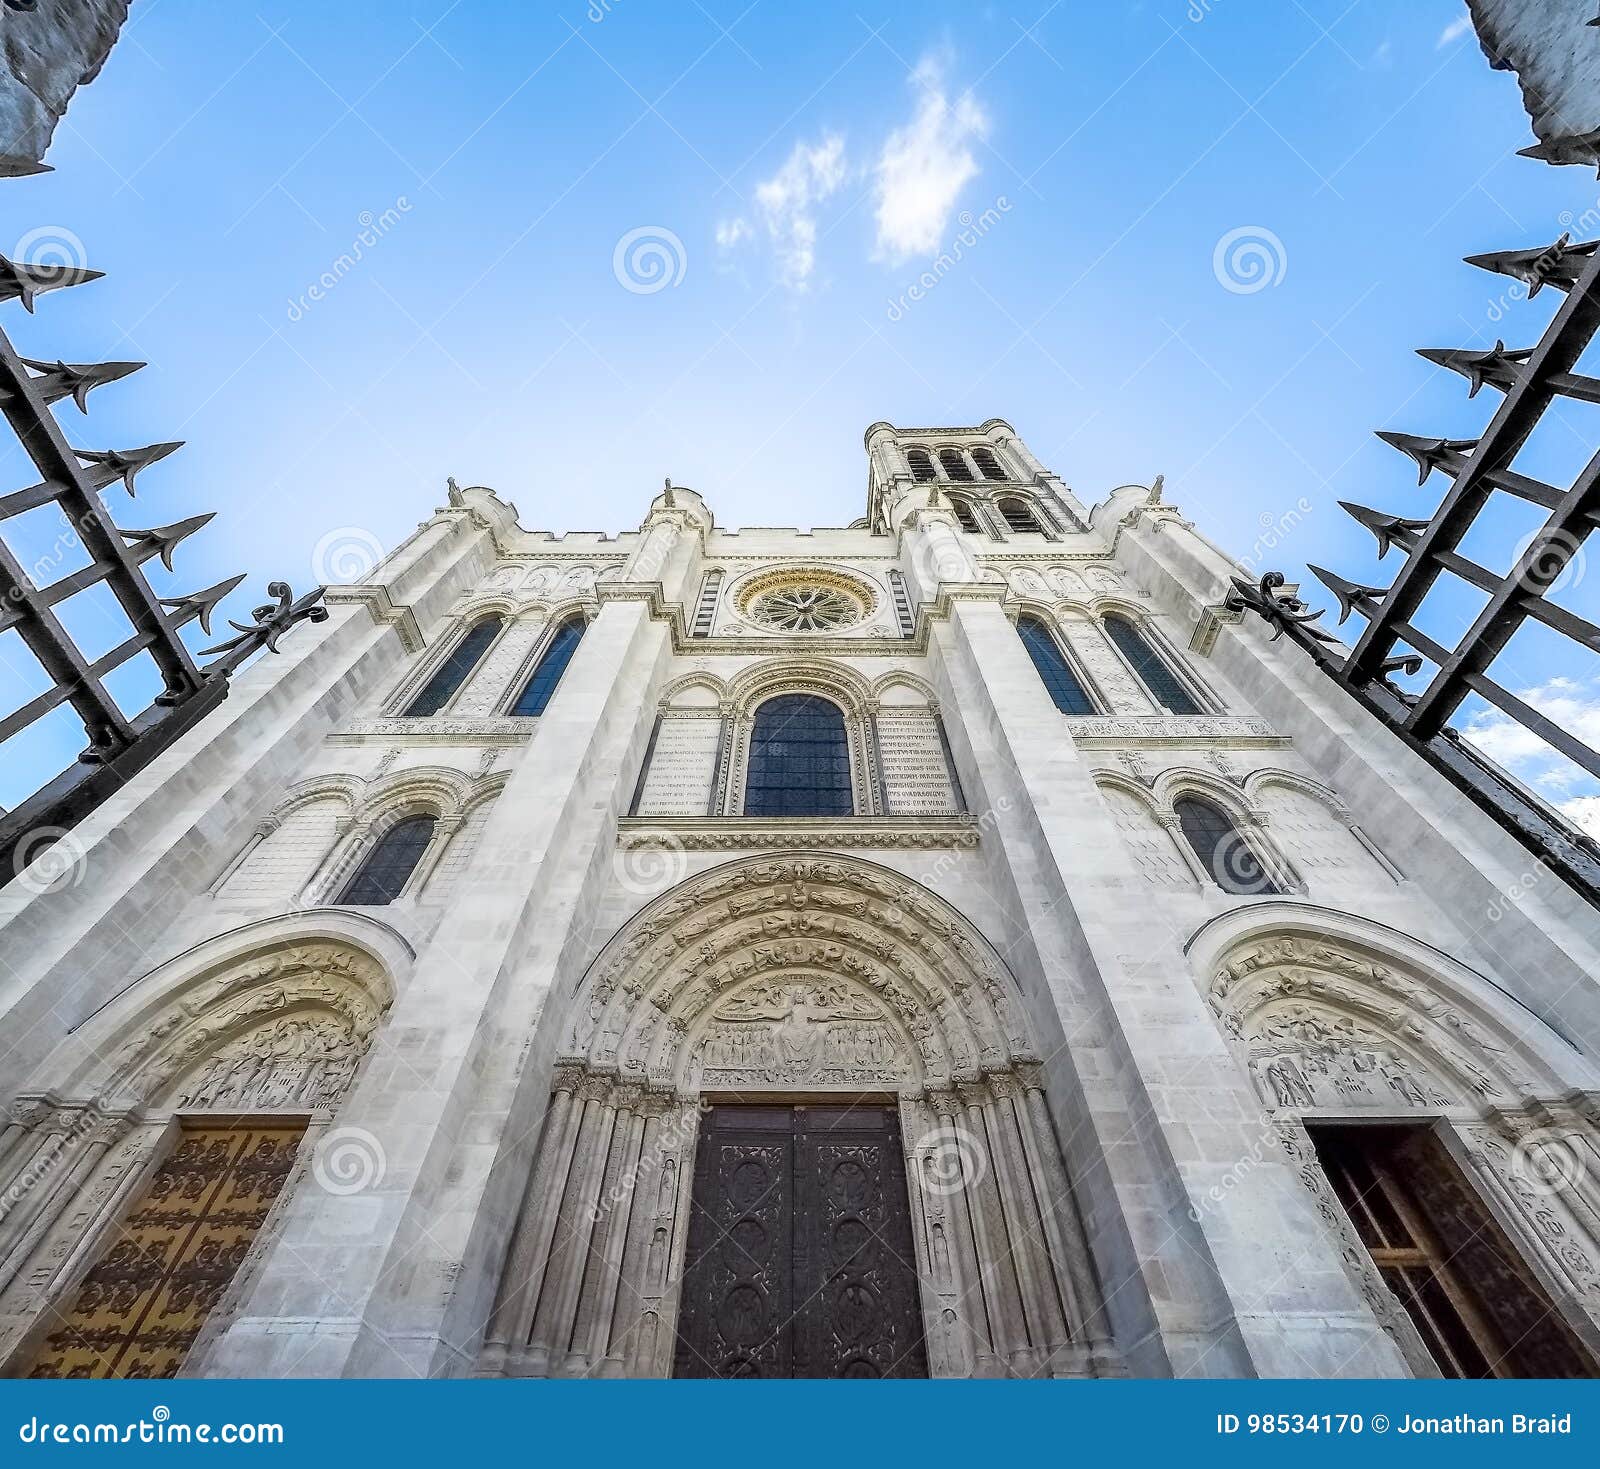 exterior facade basilica of saint denis